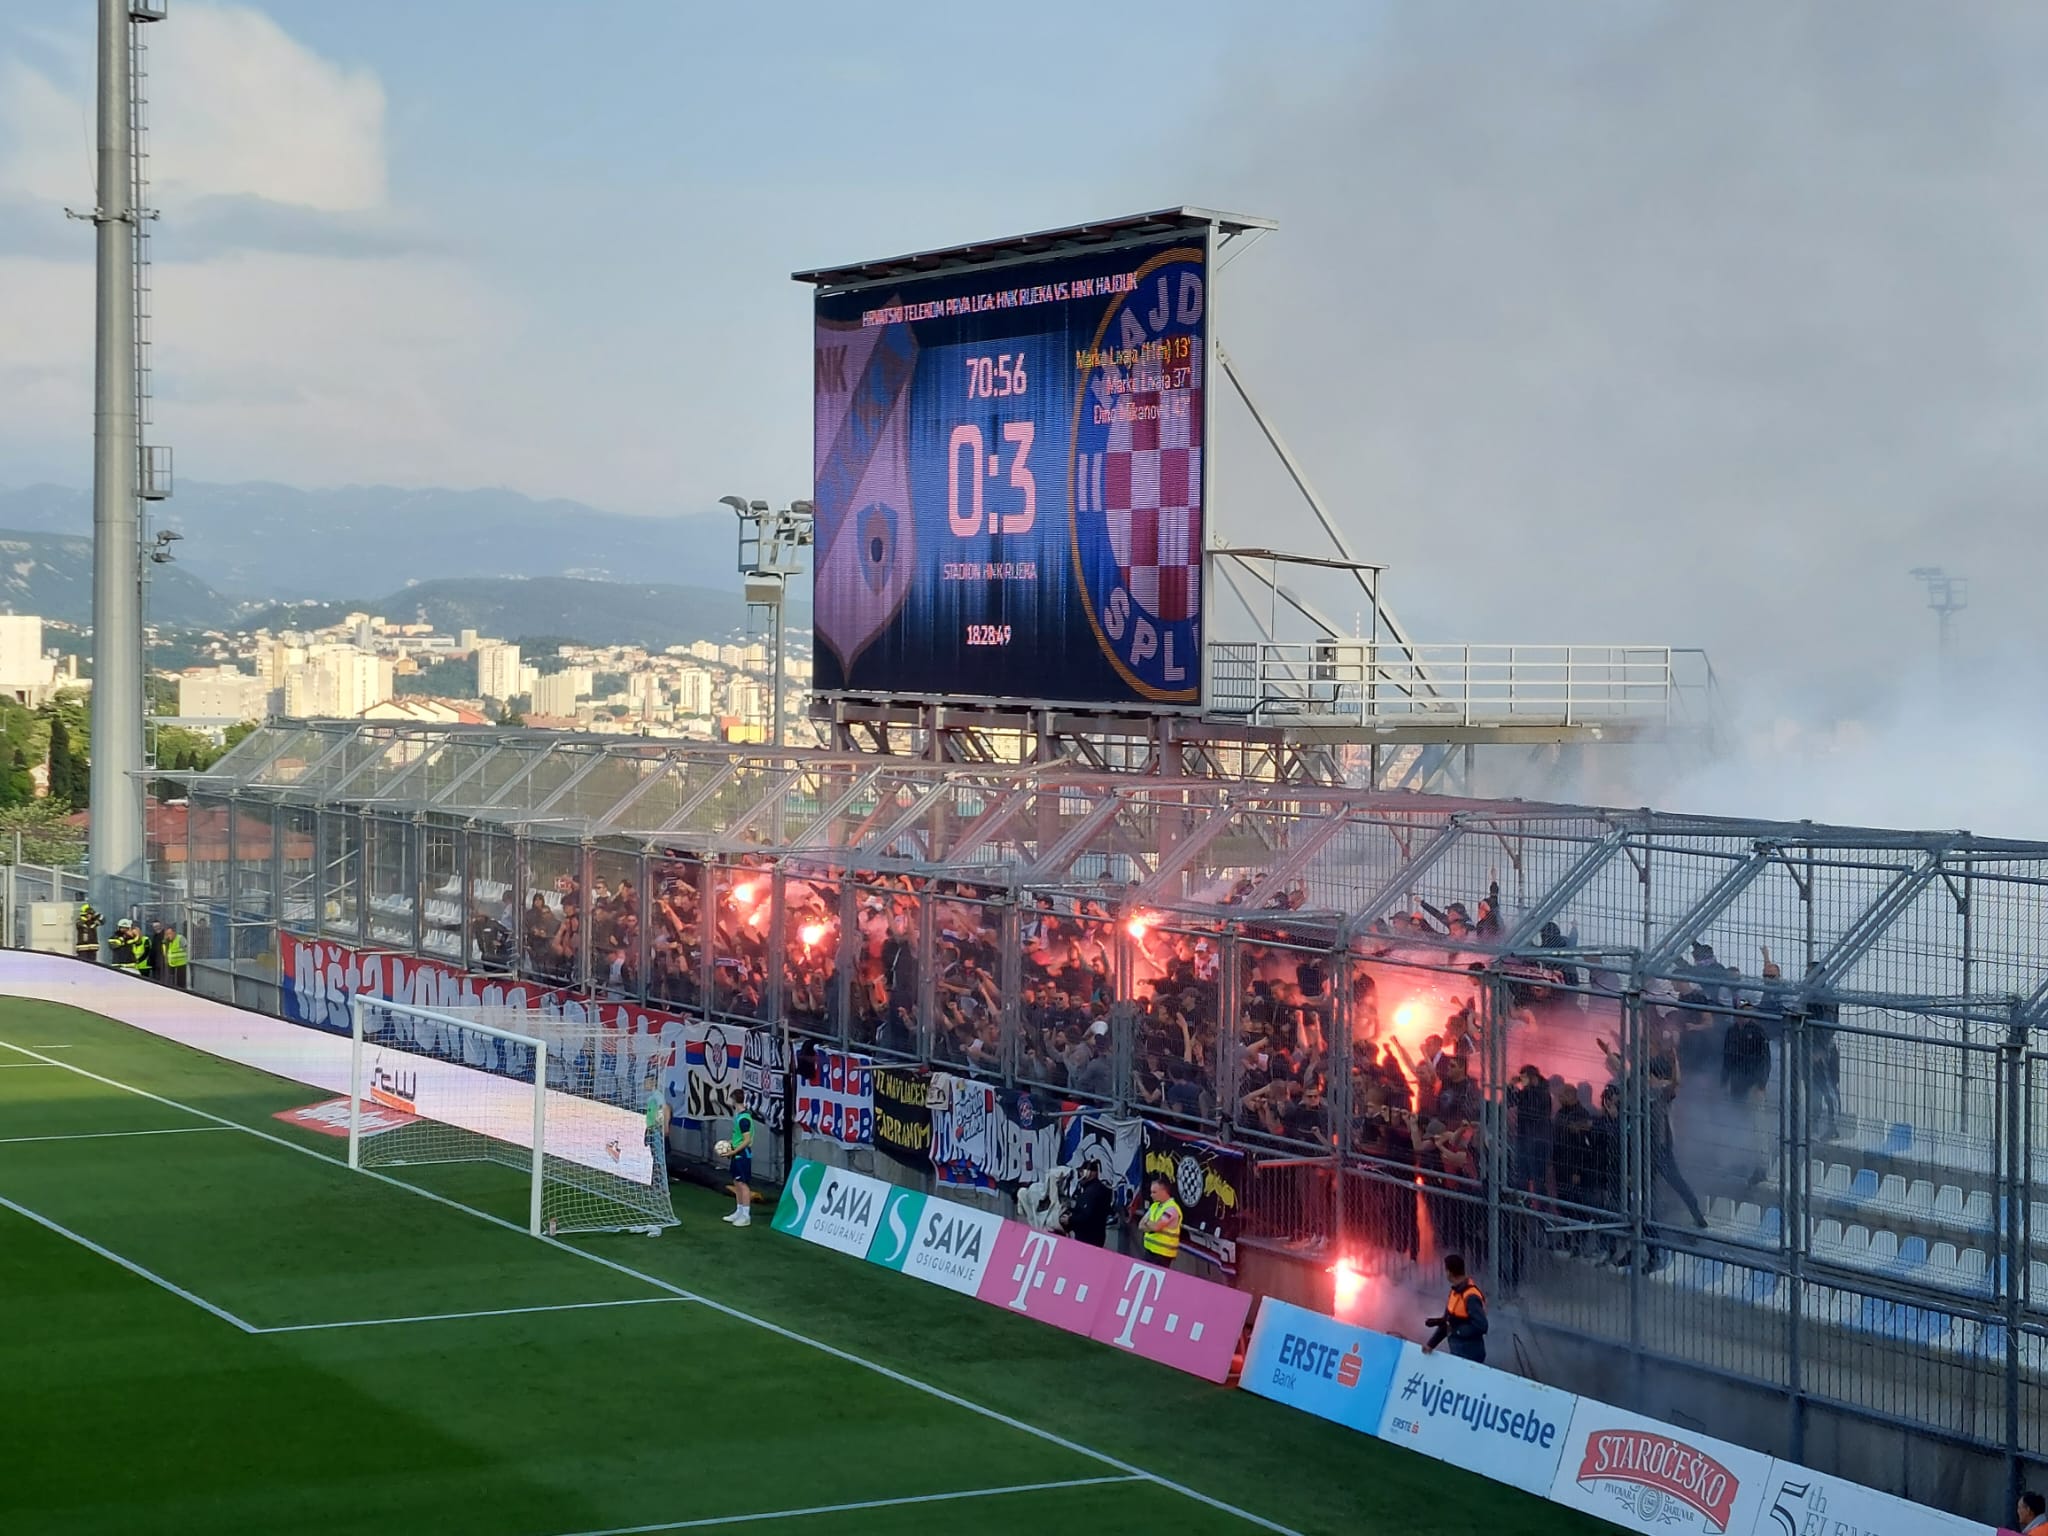 37, HNK Rijeka - HNK Hajduk Split 3:1 Stadion Rujevica 1.HN…